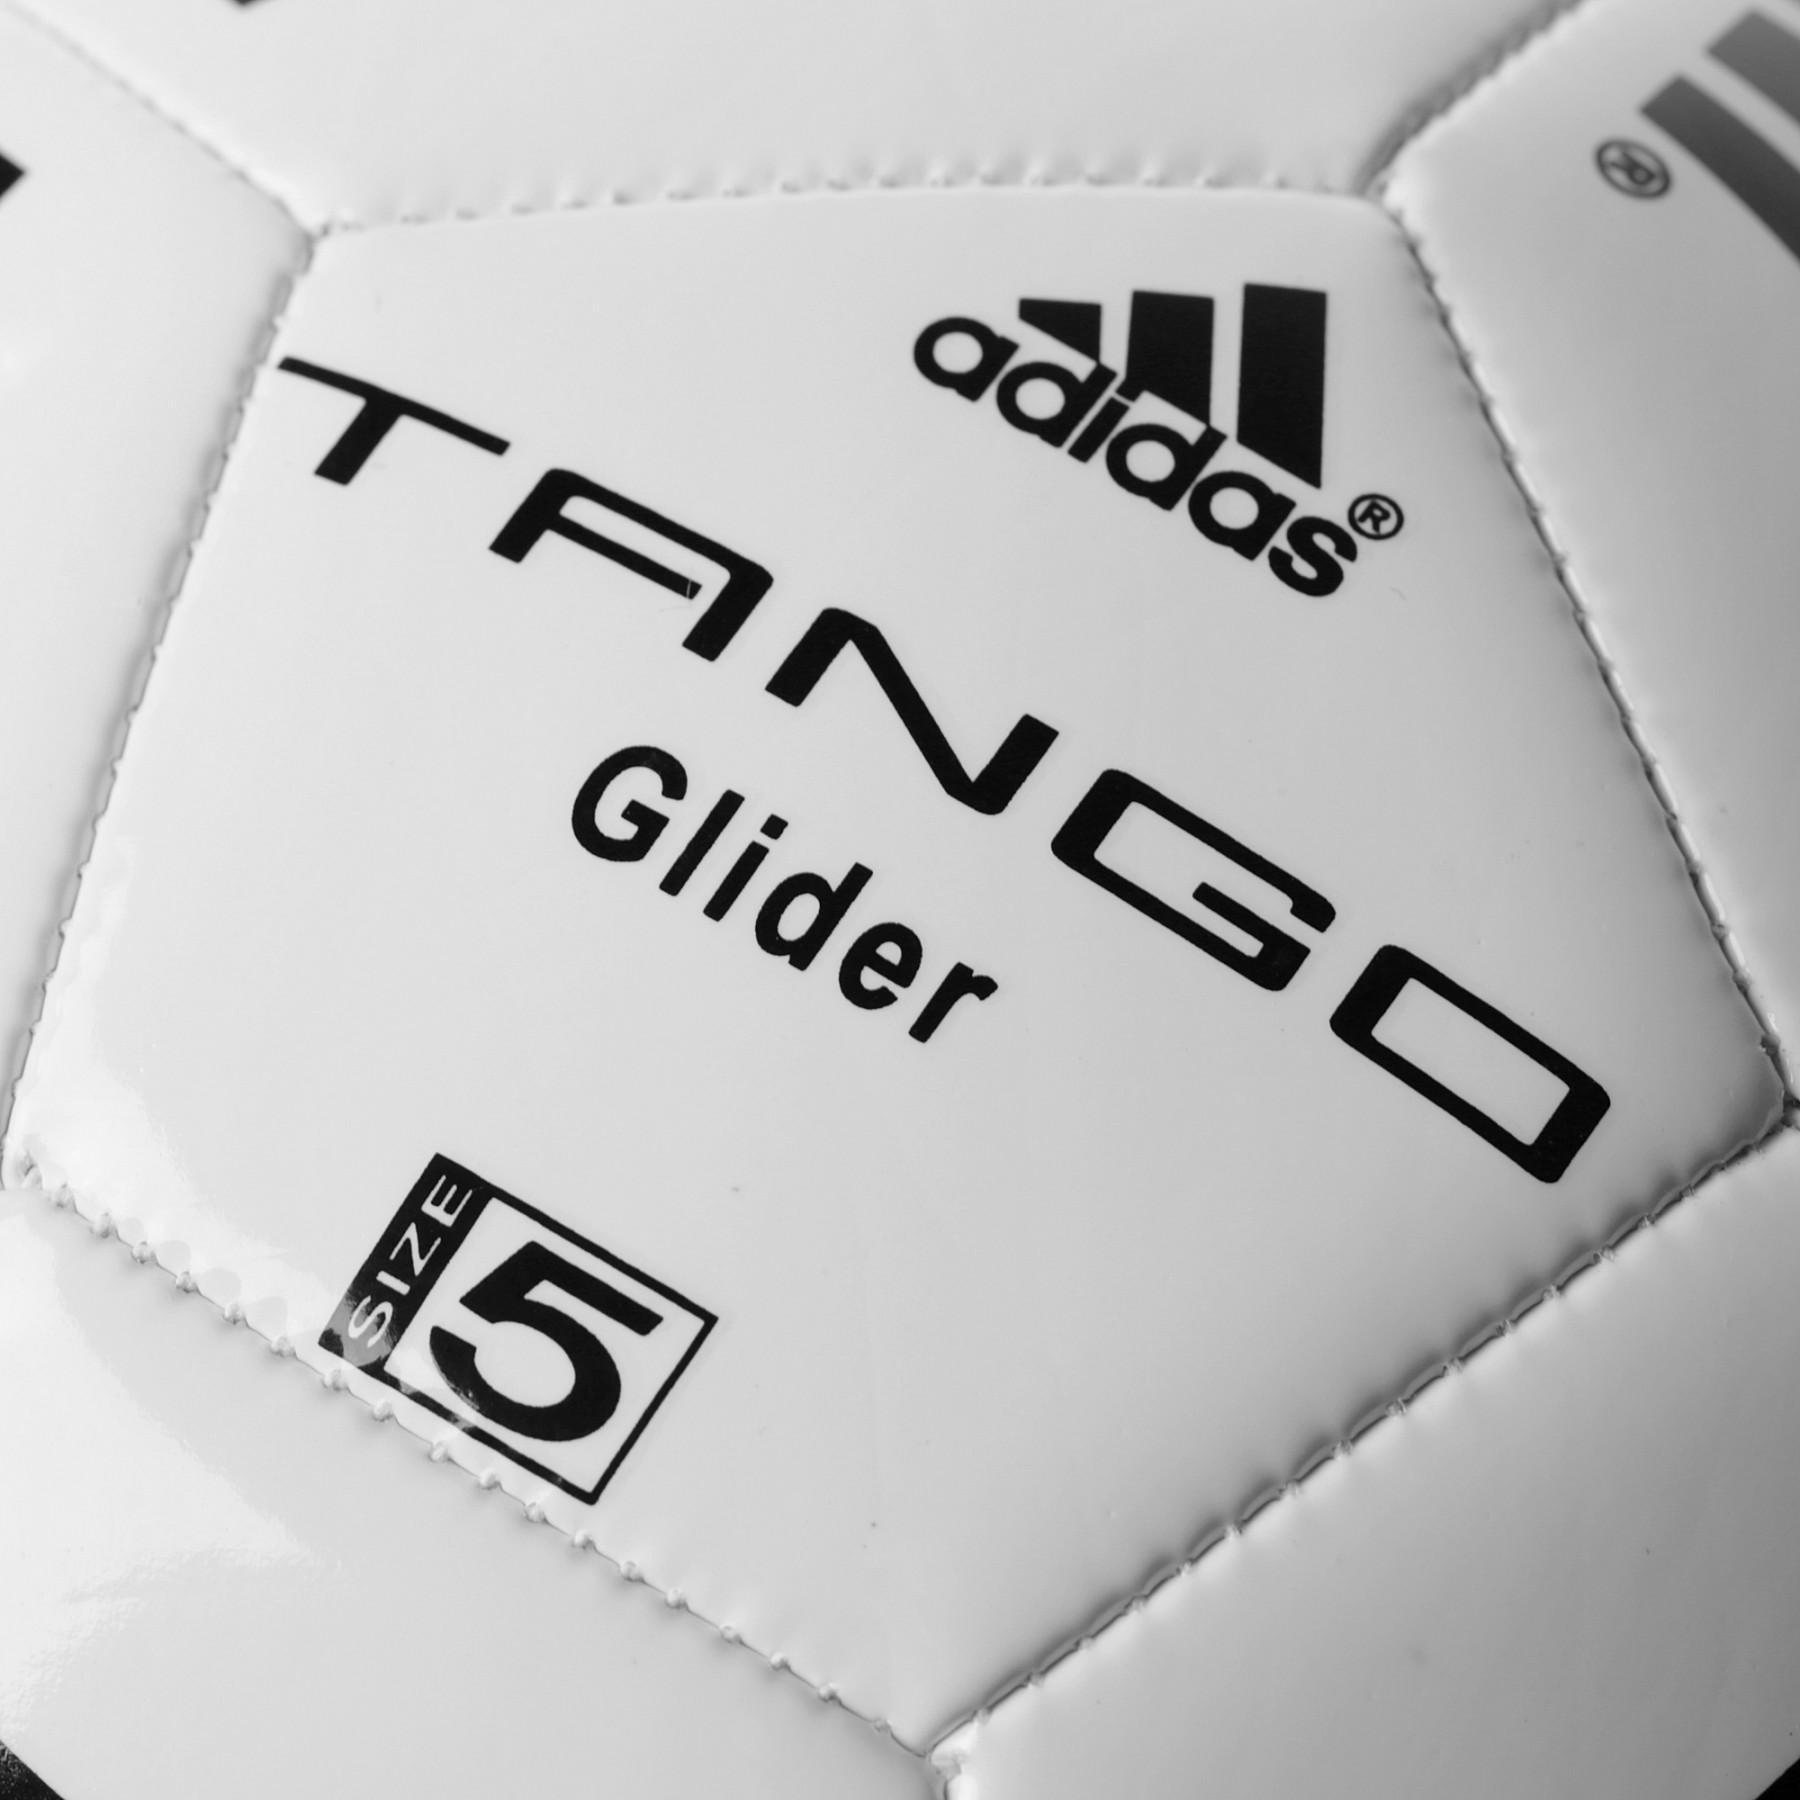 Pallone adidas Tango Glider